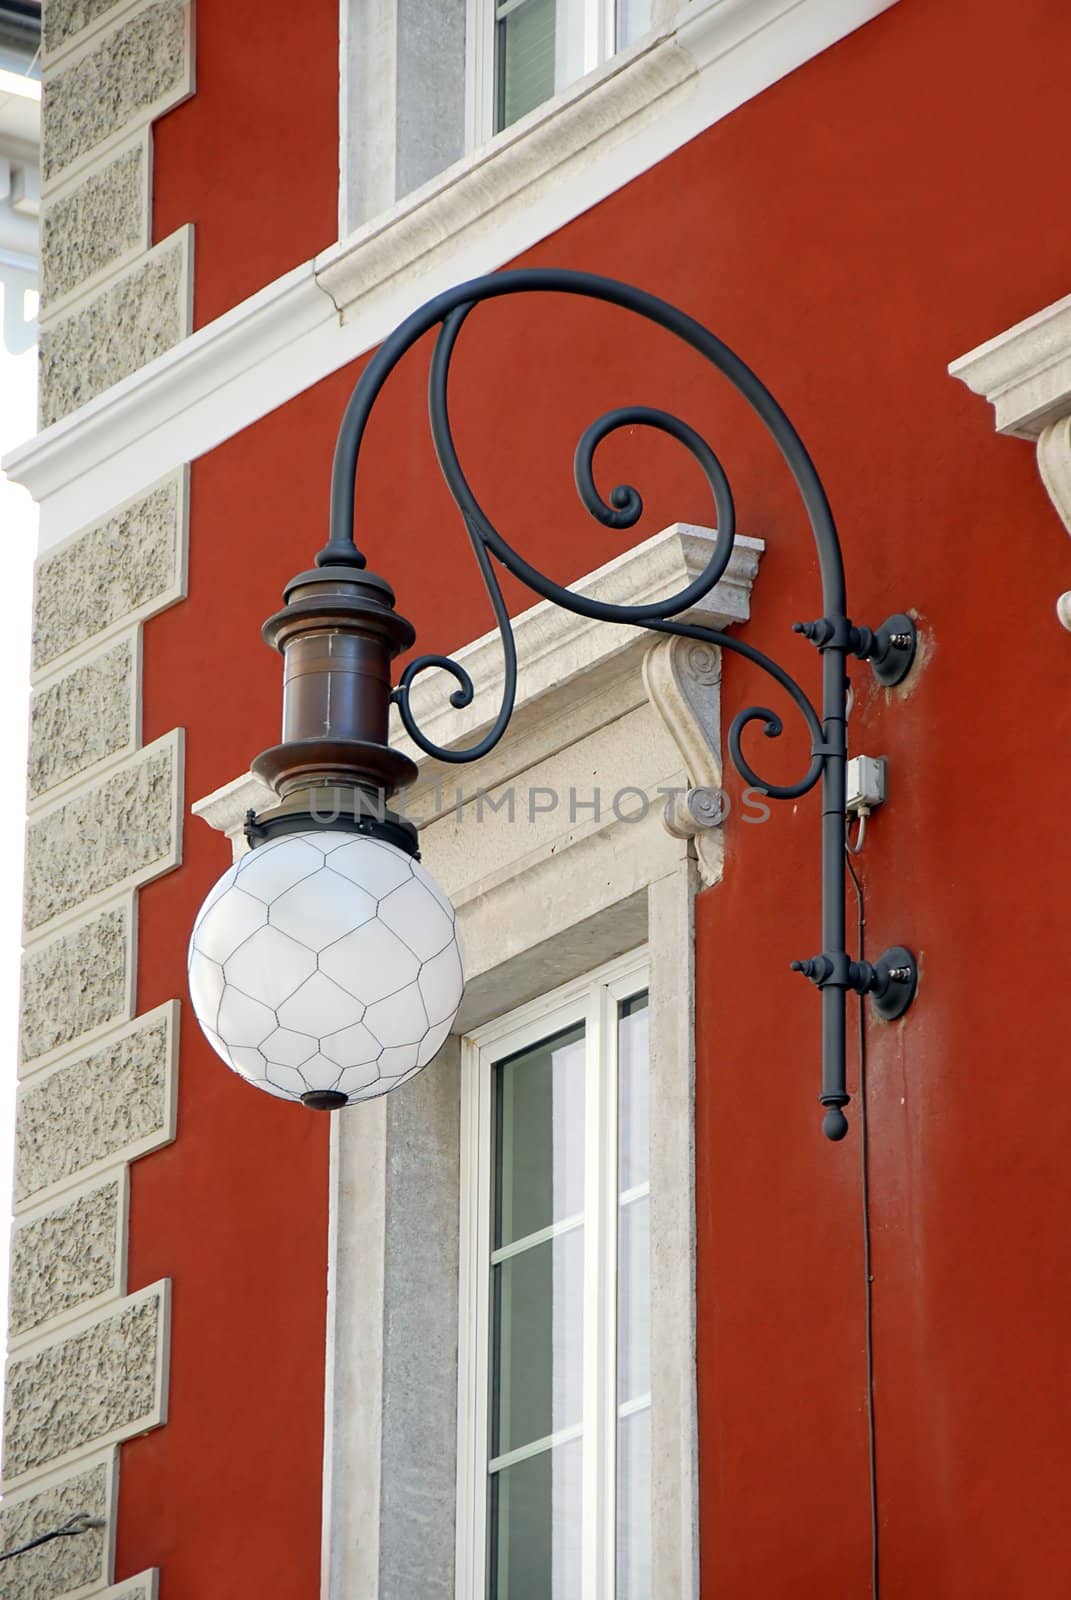 Street lamp in Trieste by simply